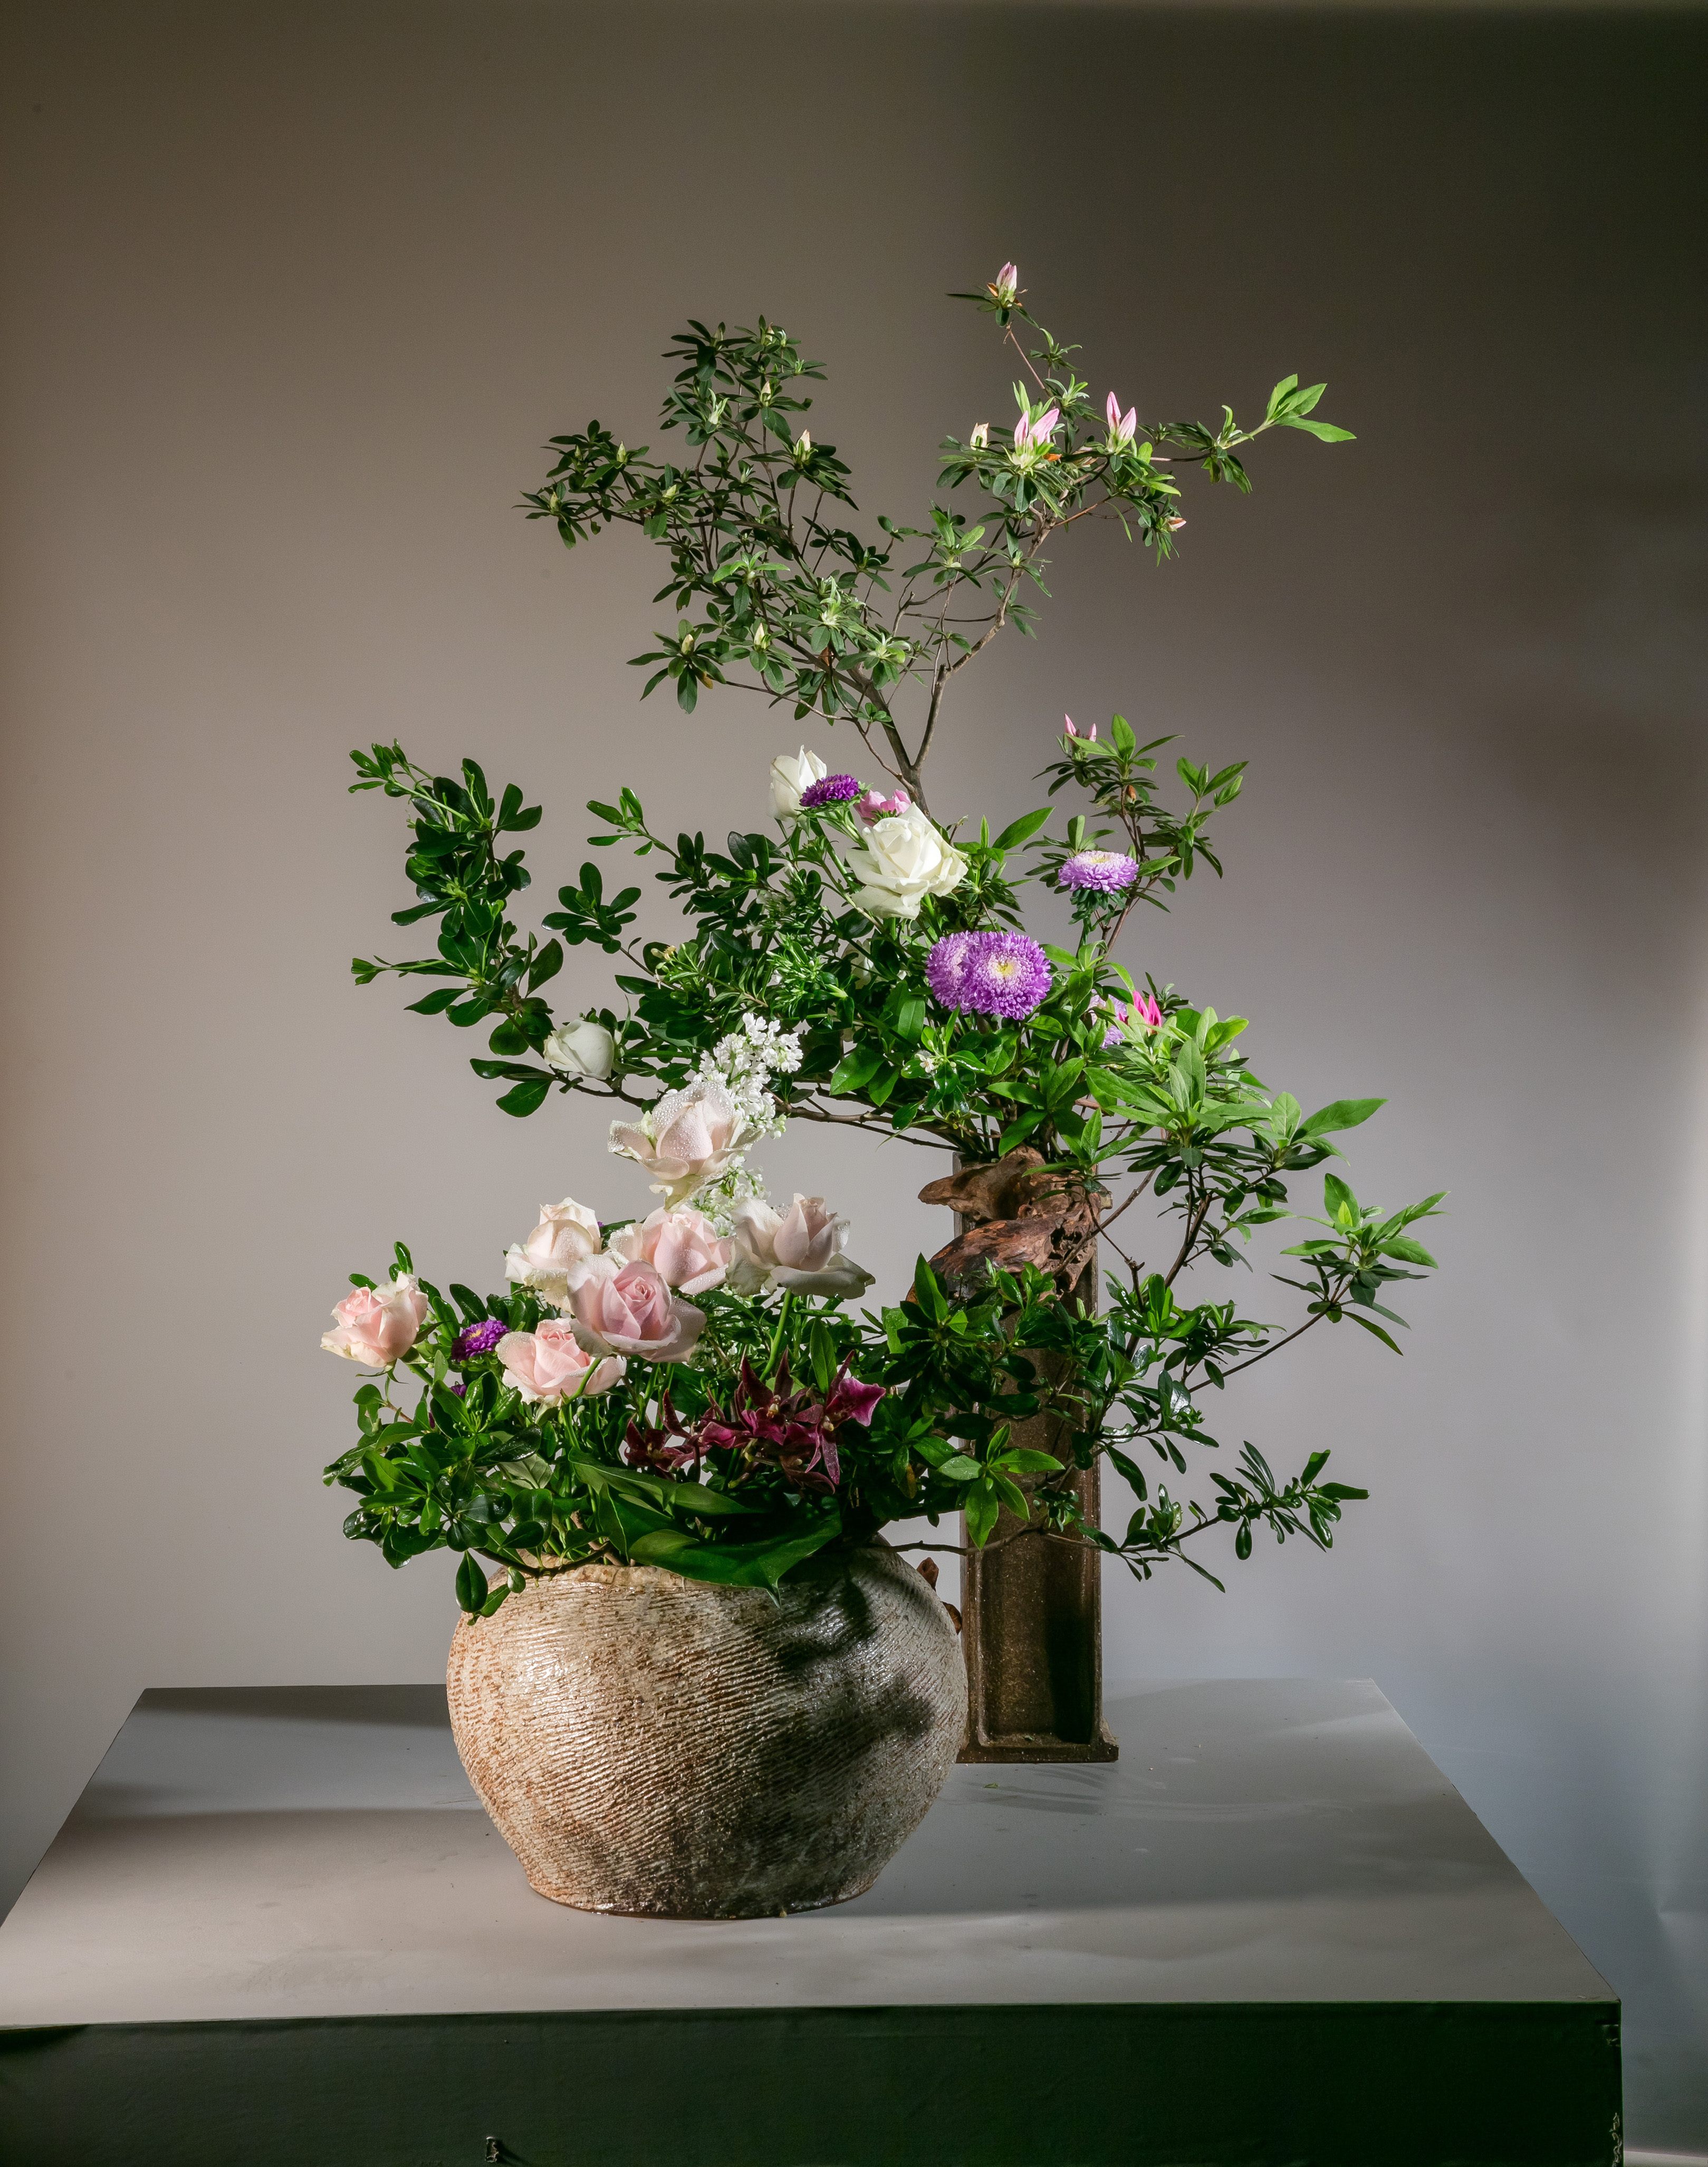 「华之盛采」特展中代表春天的作品，运用杜鹃花、油柑、玫瑰等花卉展现春天温柔的气息。